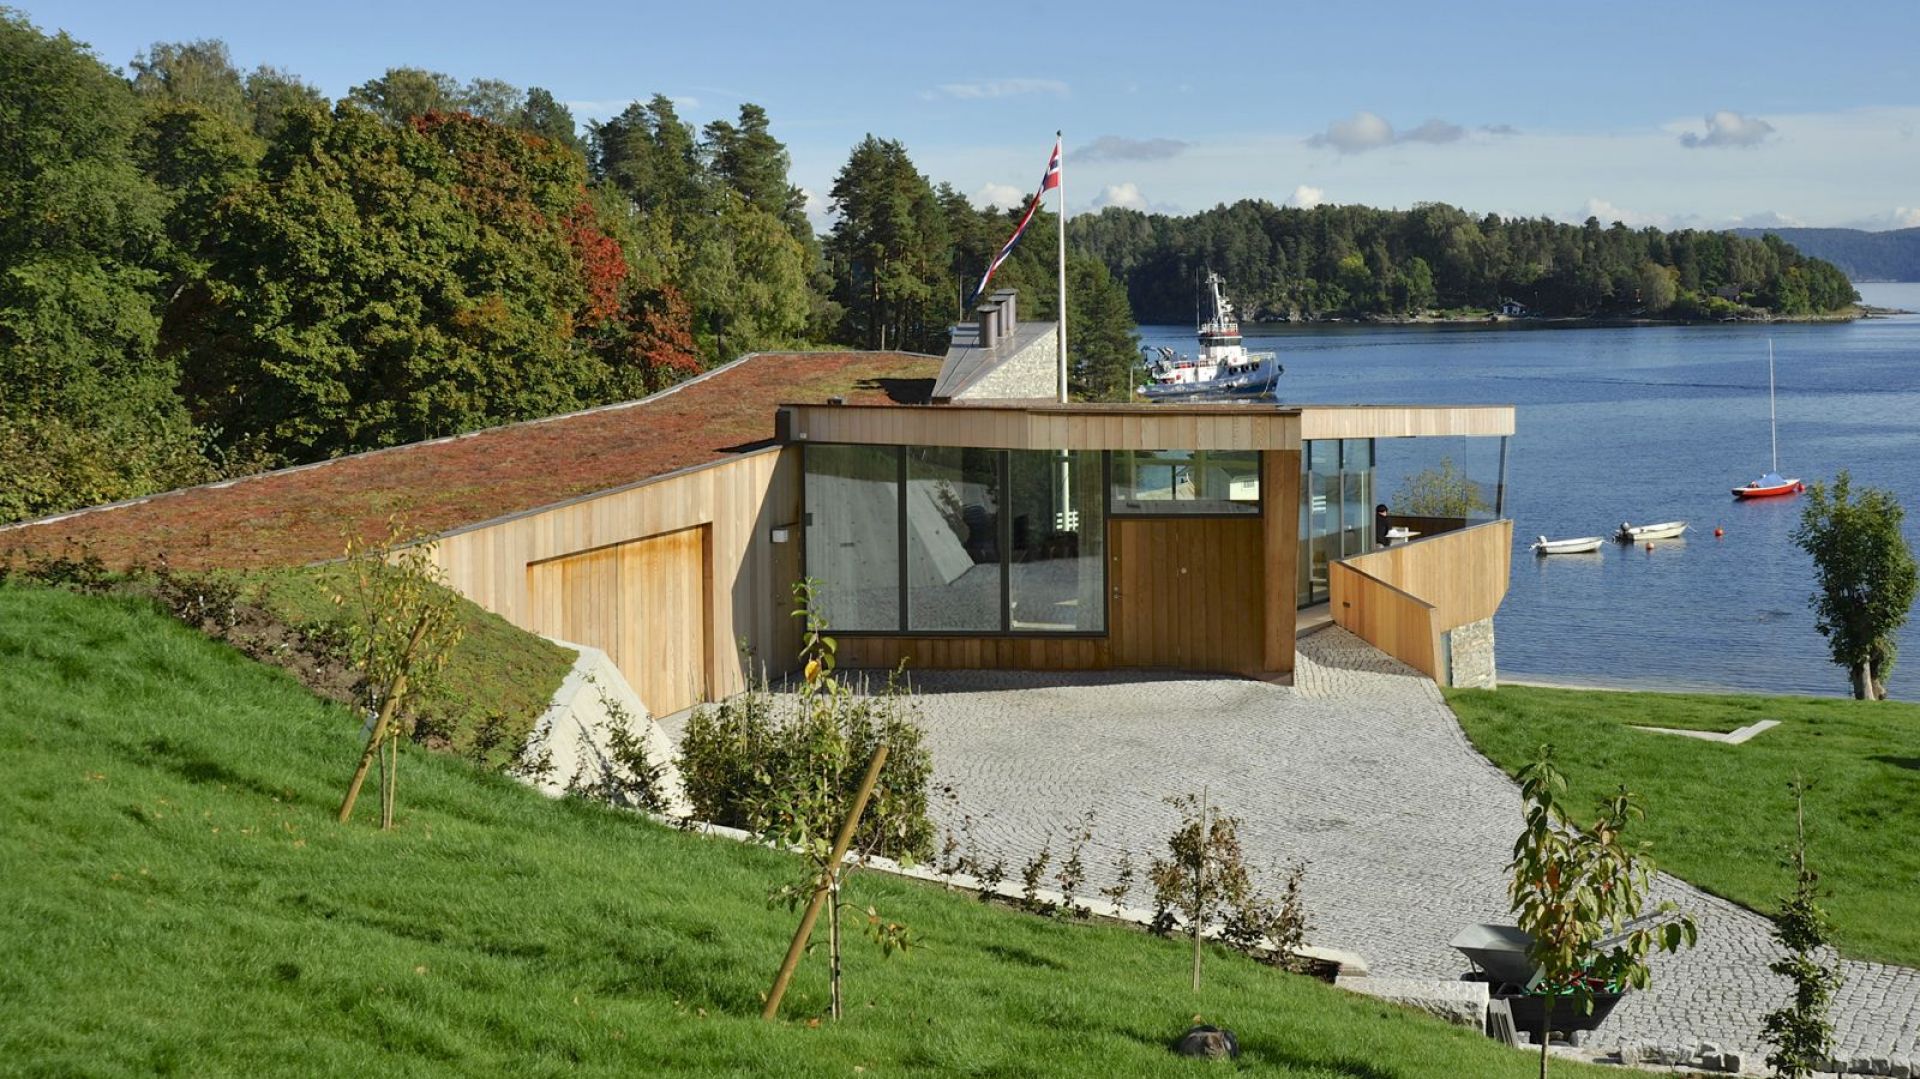 Nowoczesny dom nad morzem – zobacz jak mieszka się w Norwegii